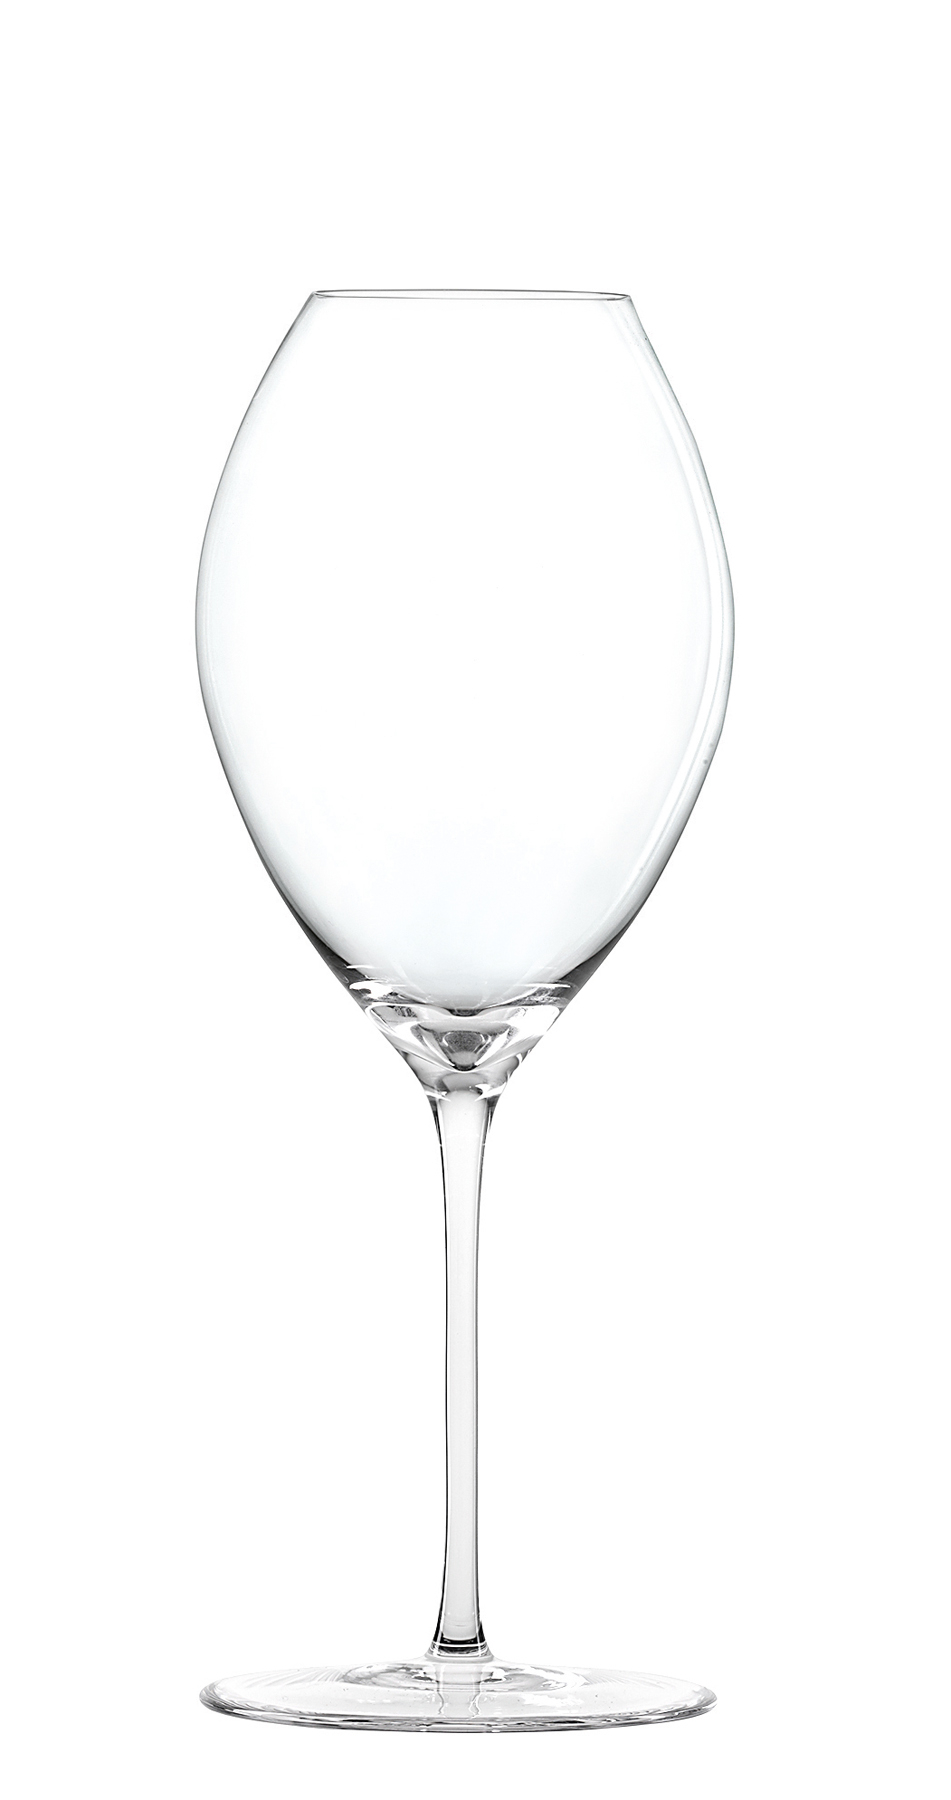 White wine glass 'Novo', Spiegelau - 480ml (6 pcs.)